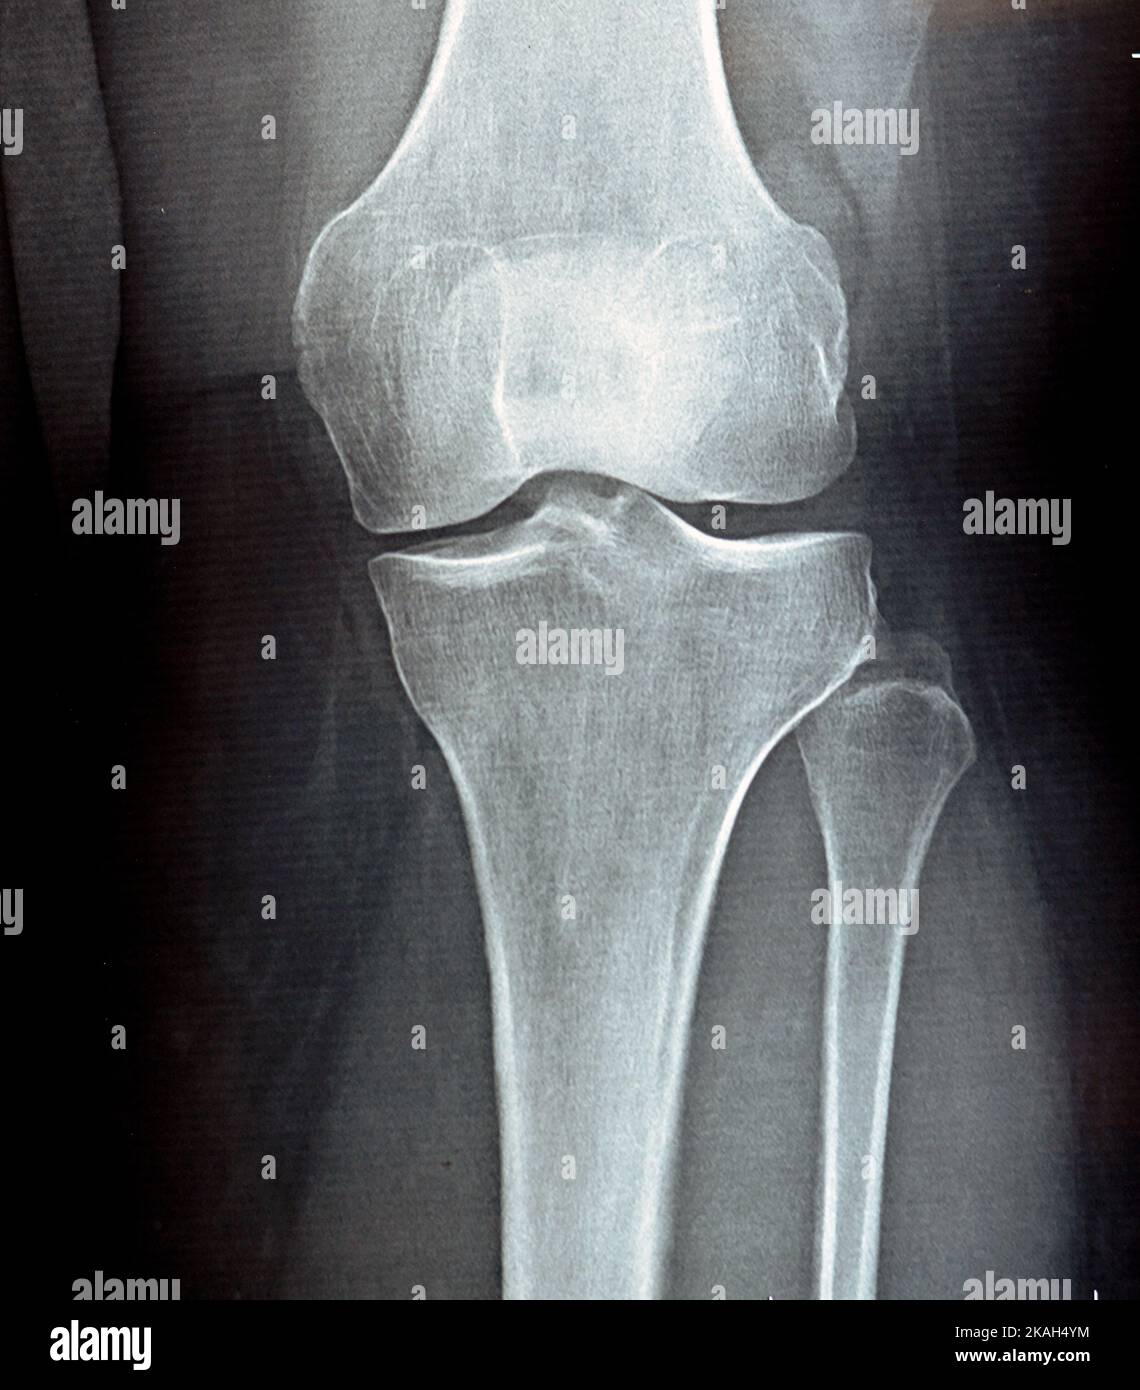 Rayons X simples sur l'articulation du genou montrant un rétrécissement de l'espace articulaire et une sclérose sous-chondrale sur le compartiment médial (épaississement de l'os qui se produit dans les articulations aff Banque D'Images